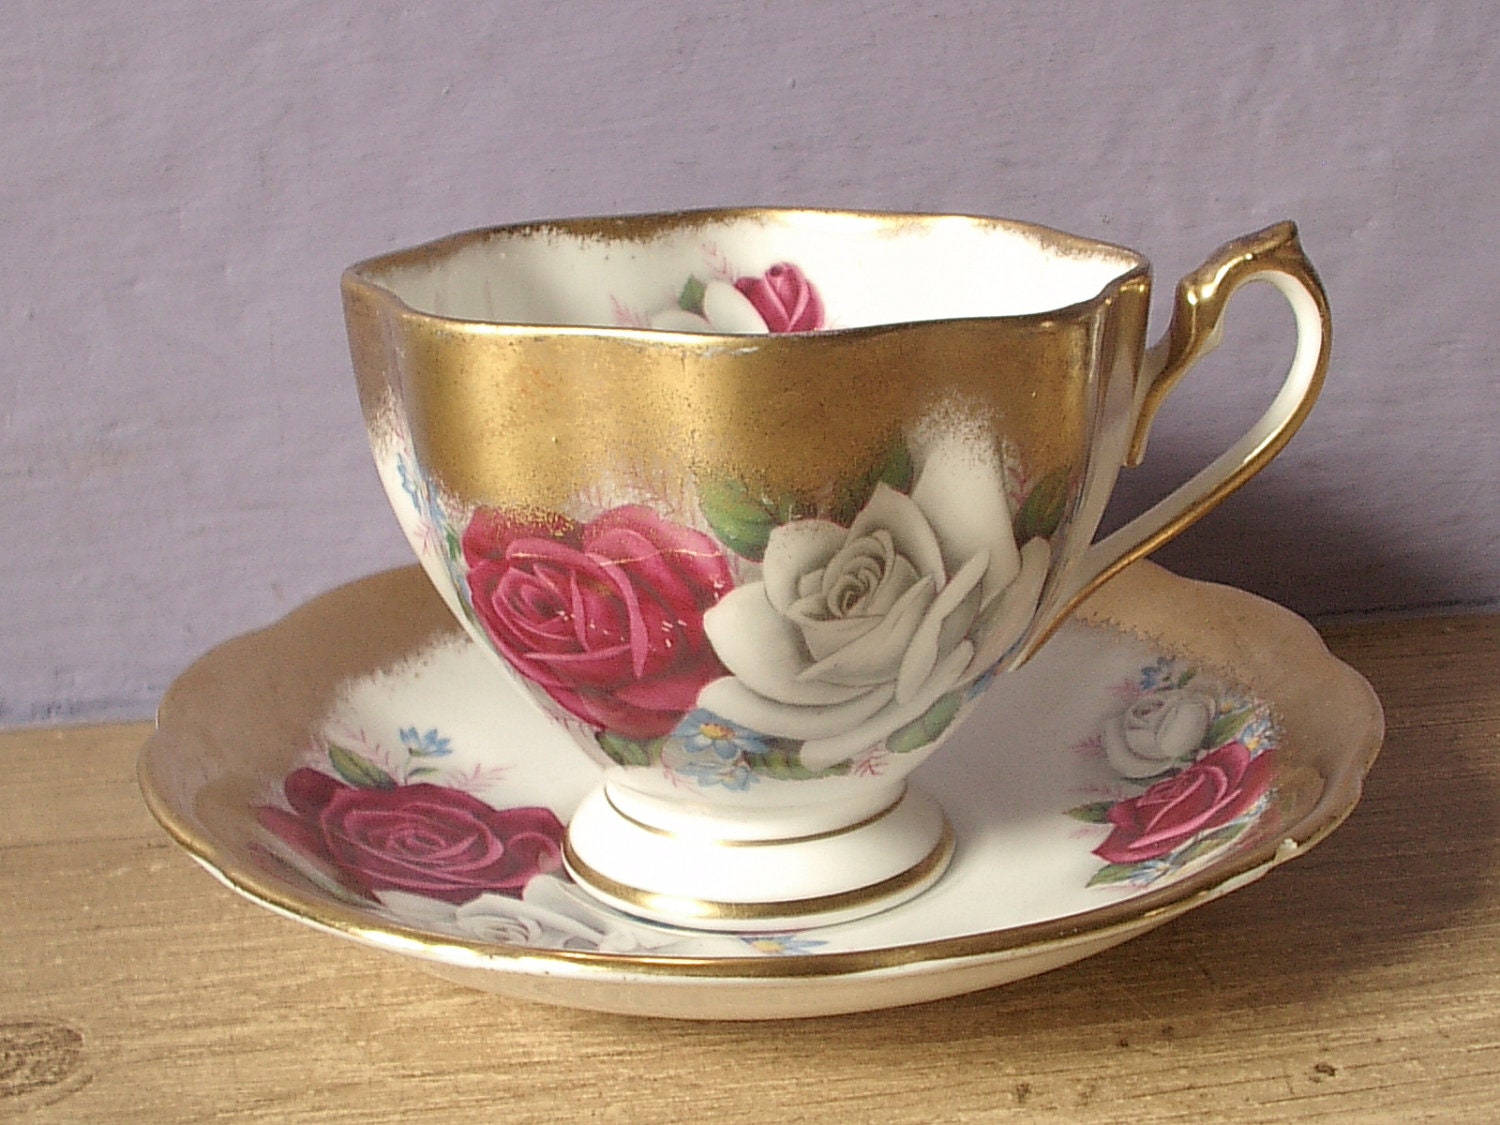 rose sets cup vintage ShoponSherman white tea tea saucer vintage by and set cup red